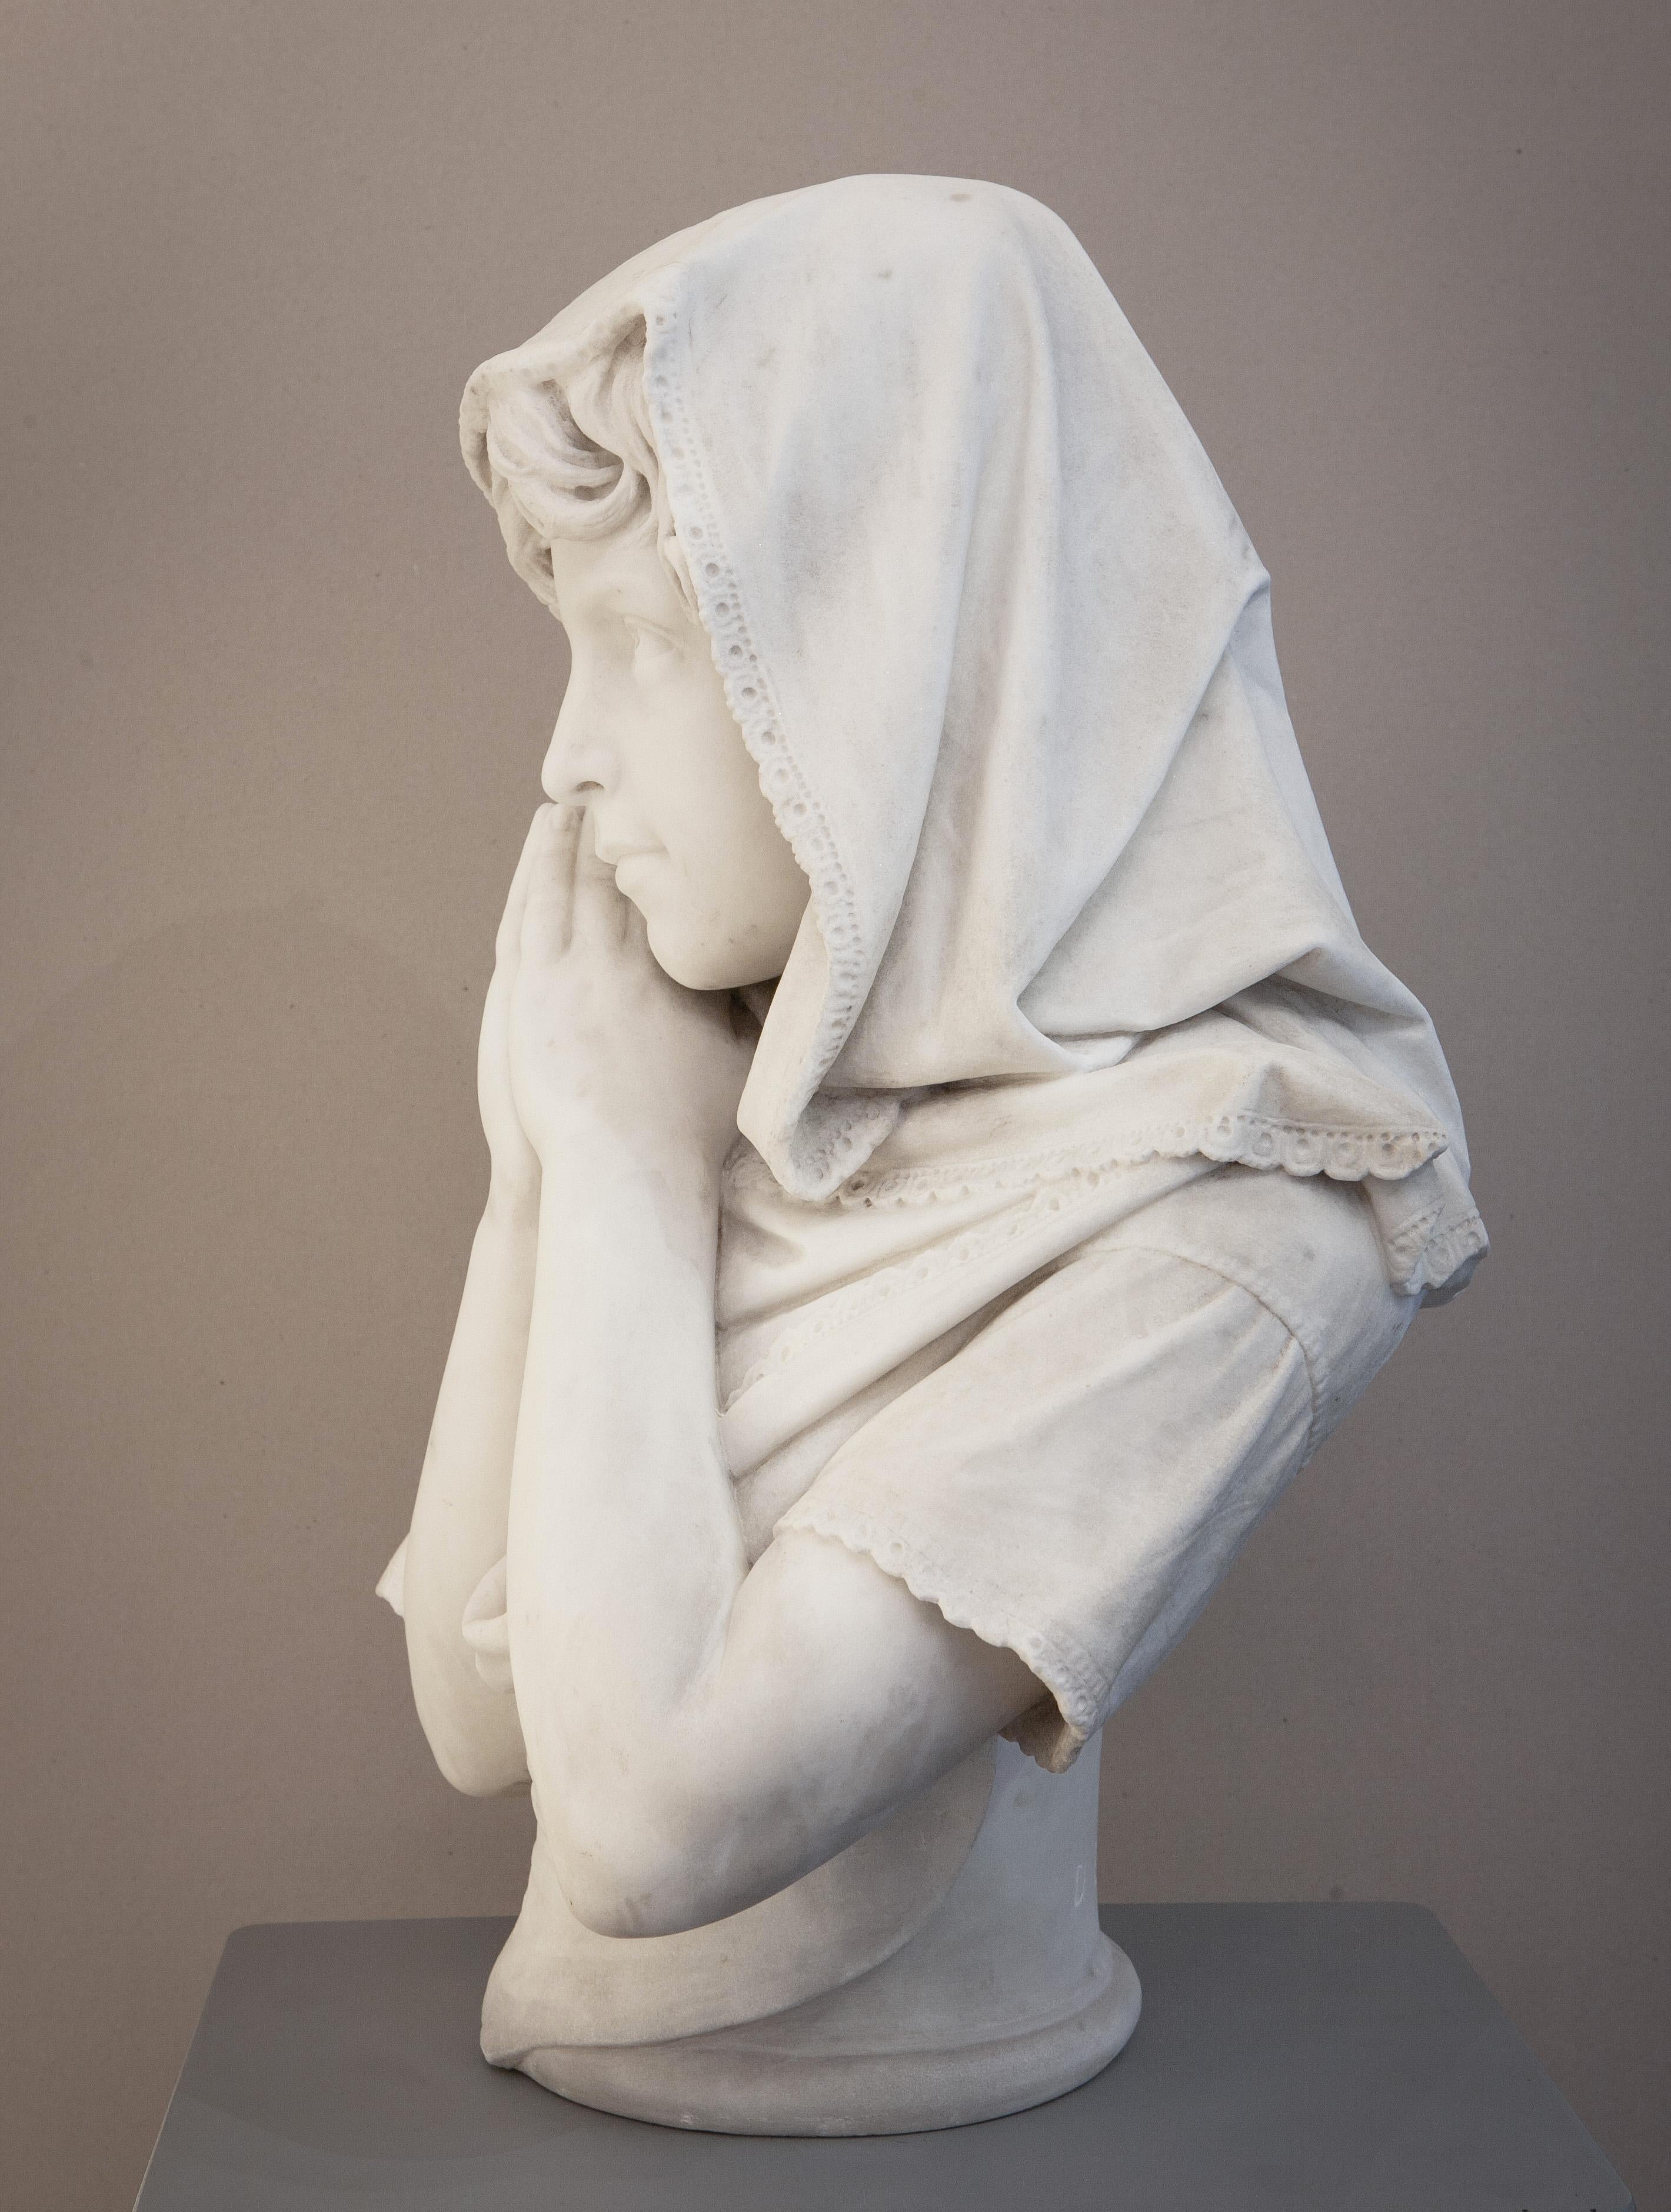 Little girl with clasped hands - Gray Figurative Sculpture by Donato Barcaglia (1849 – 1930)